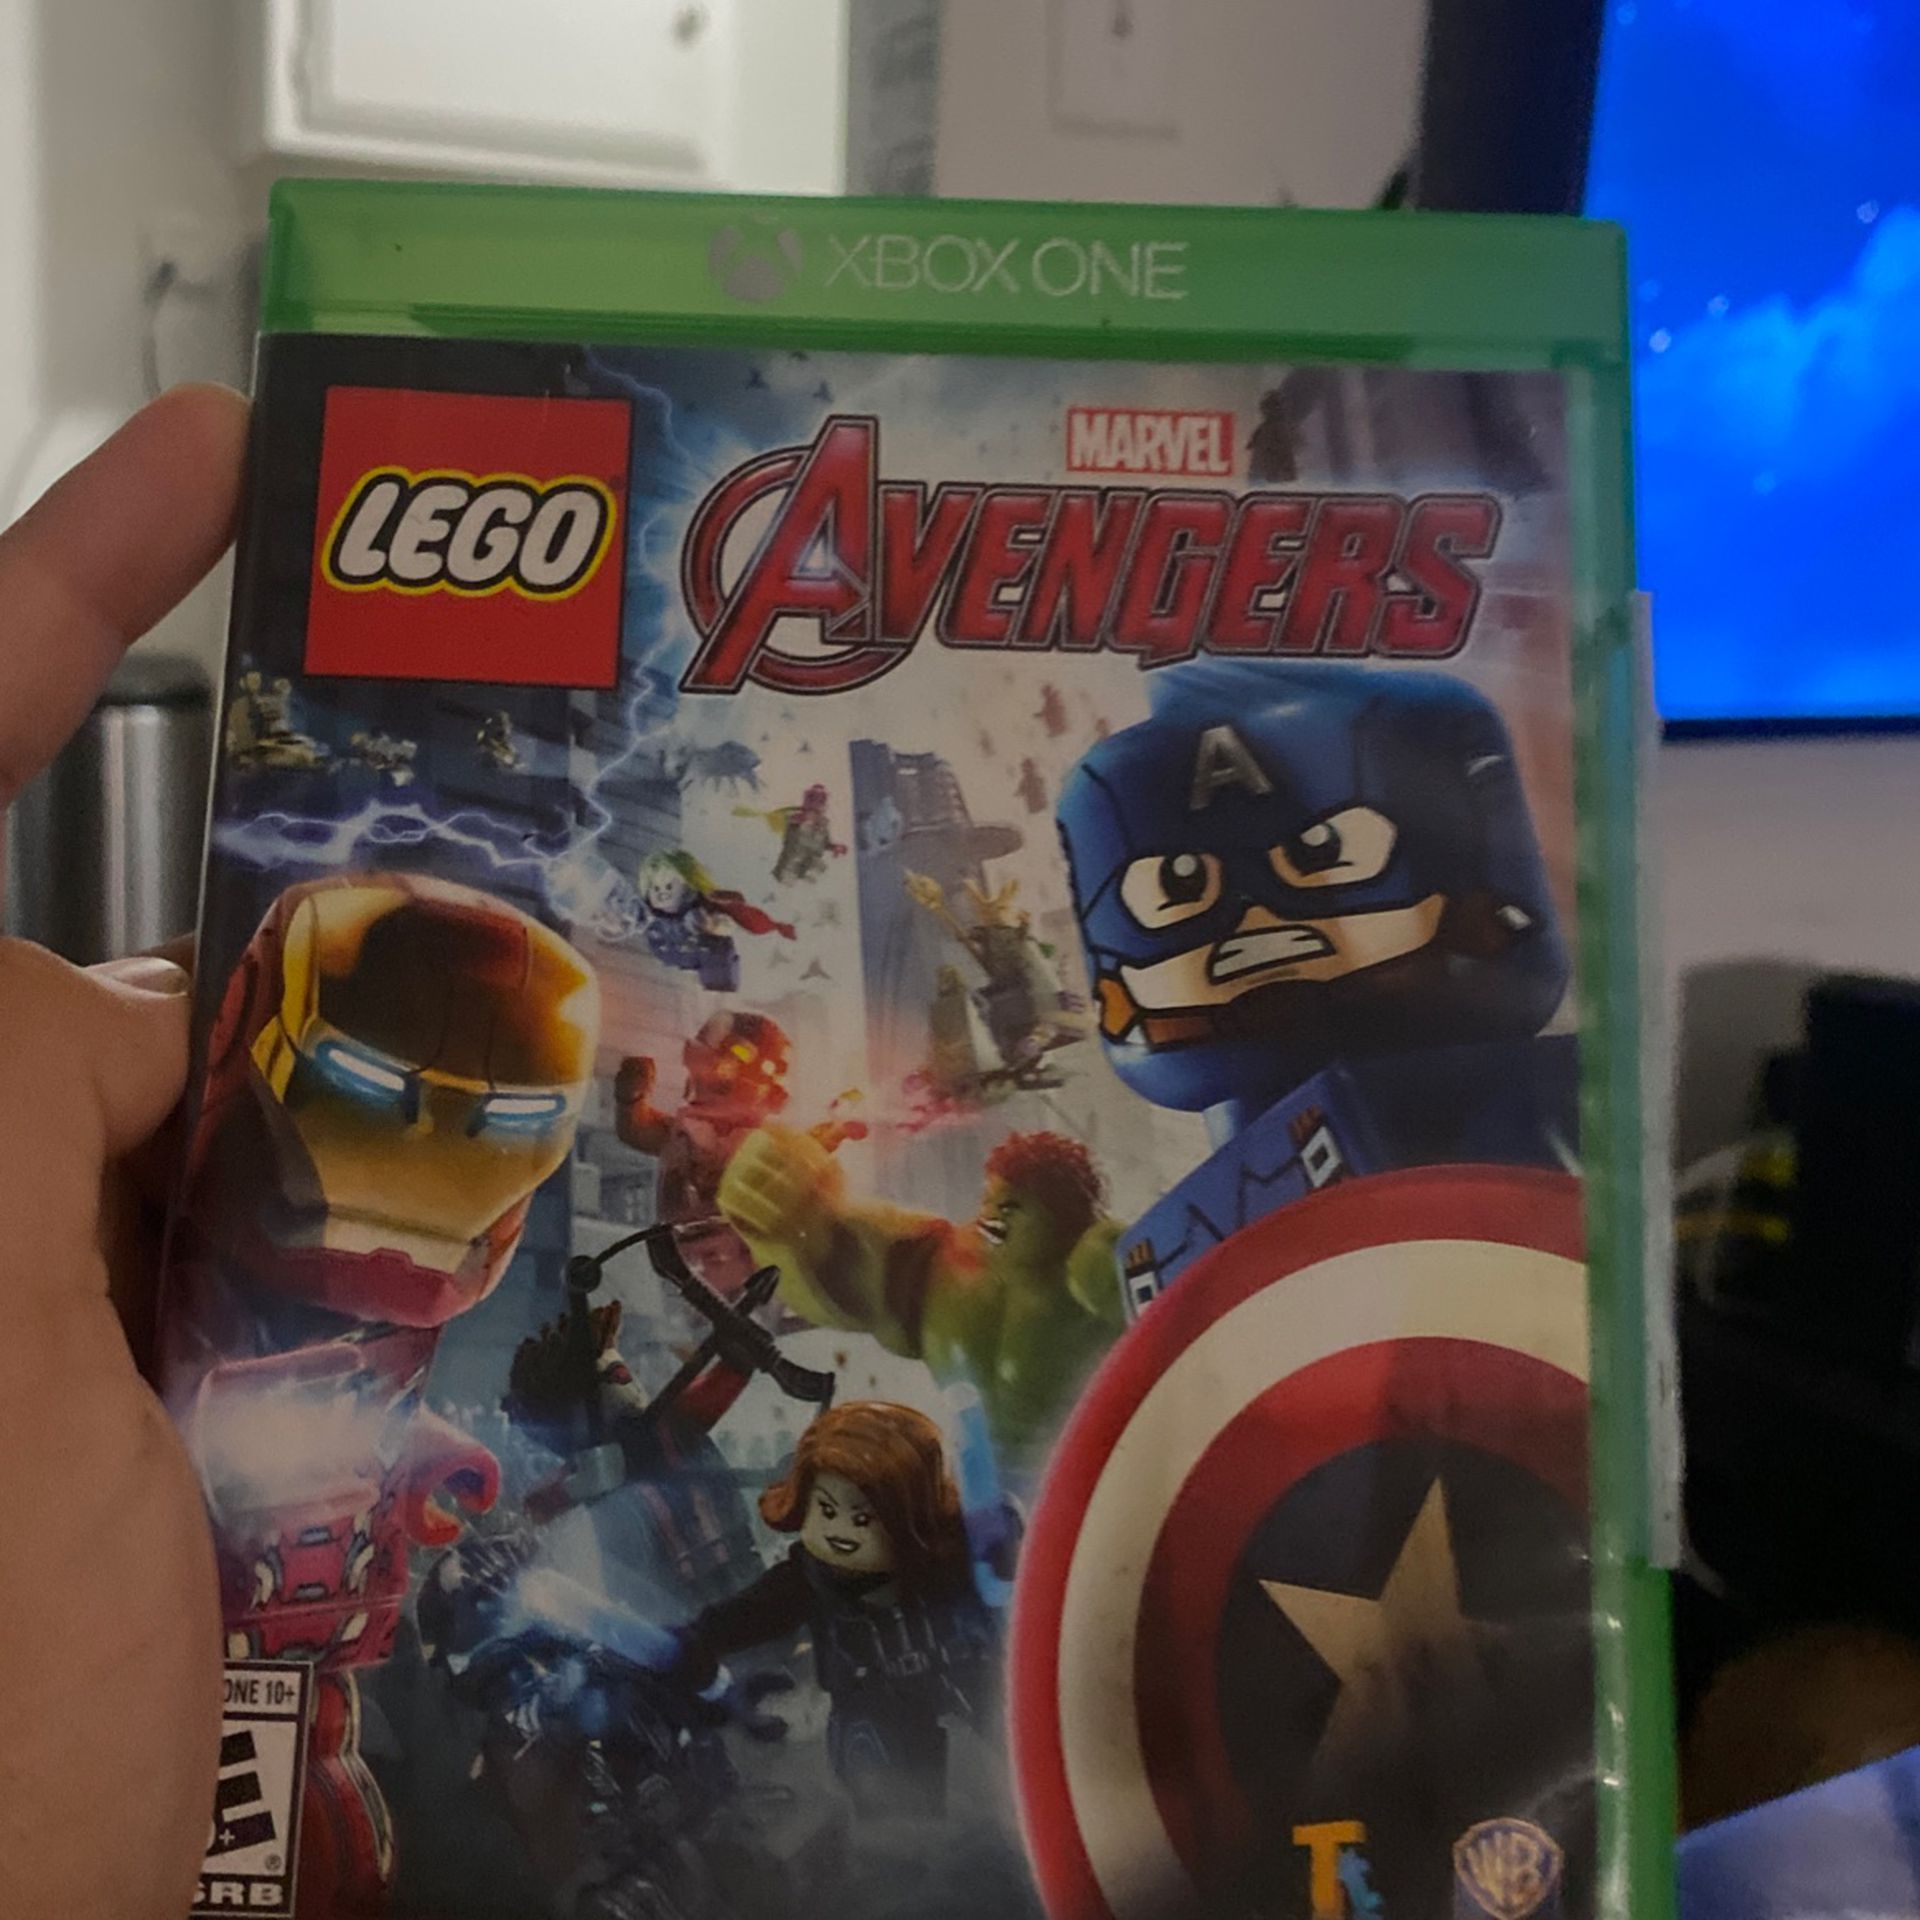 Xbox One Lego Marvel Avengers